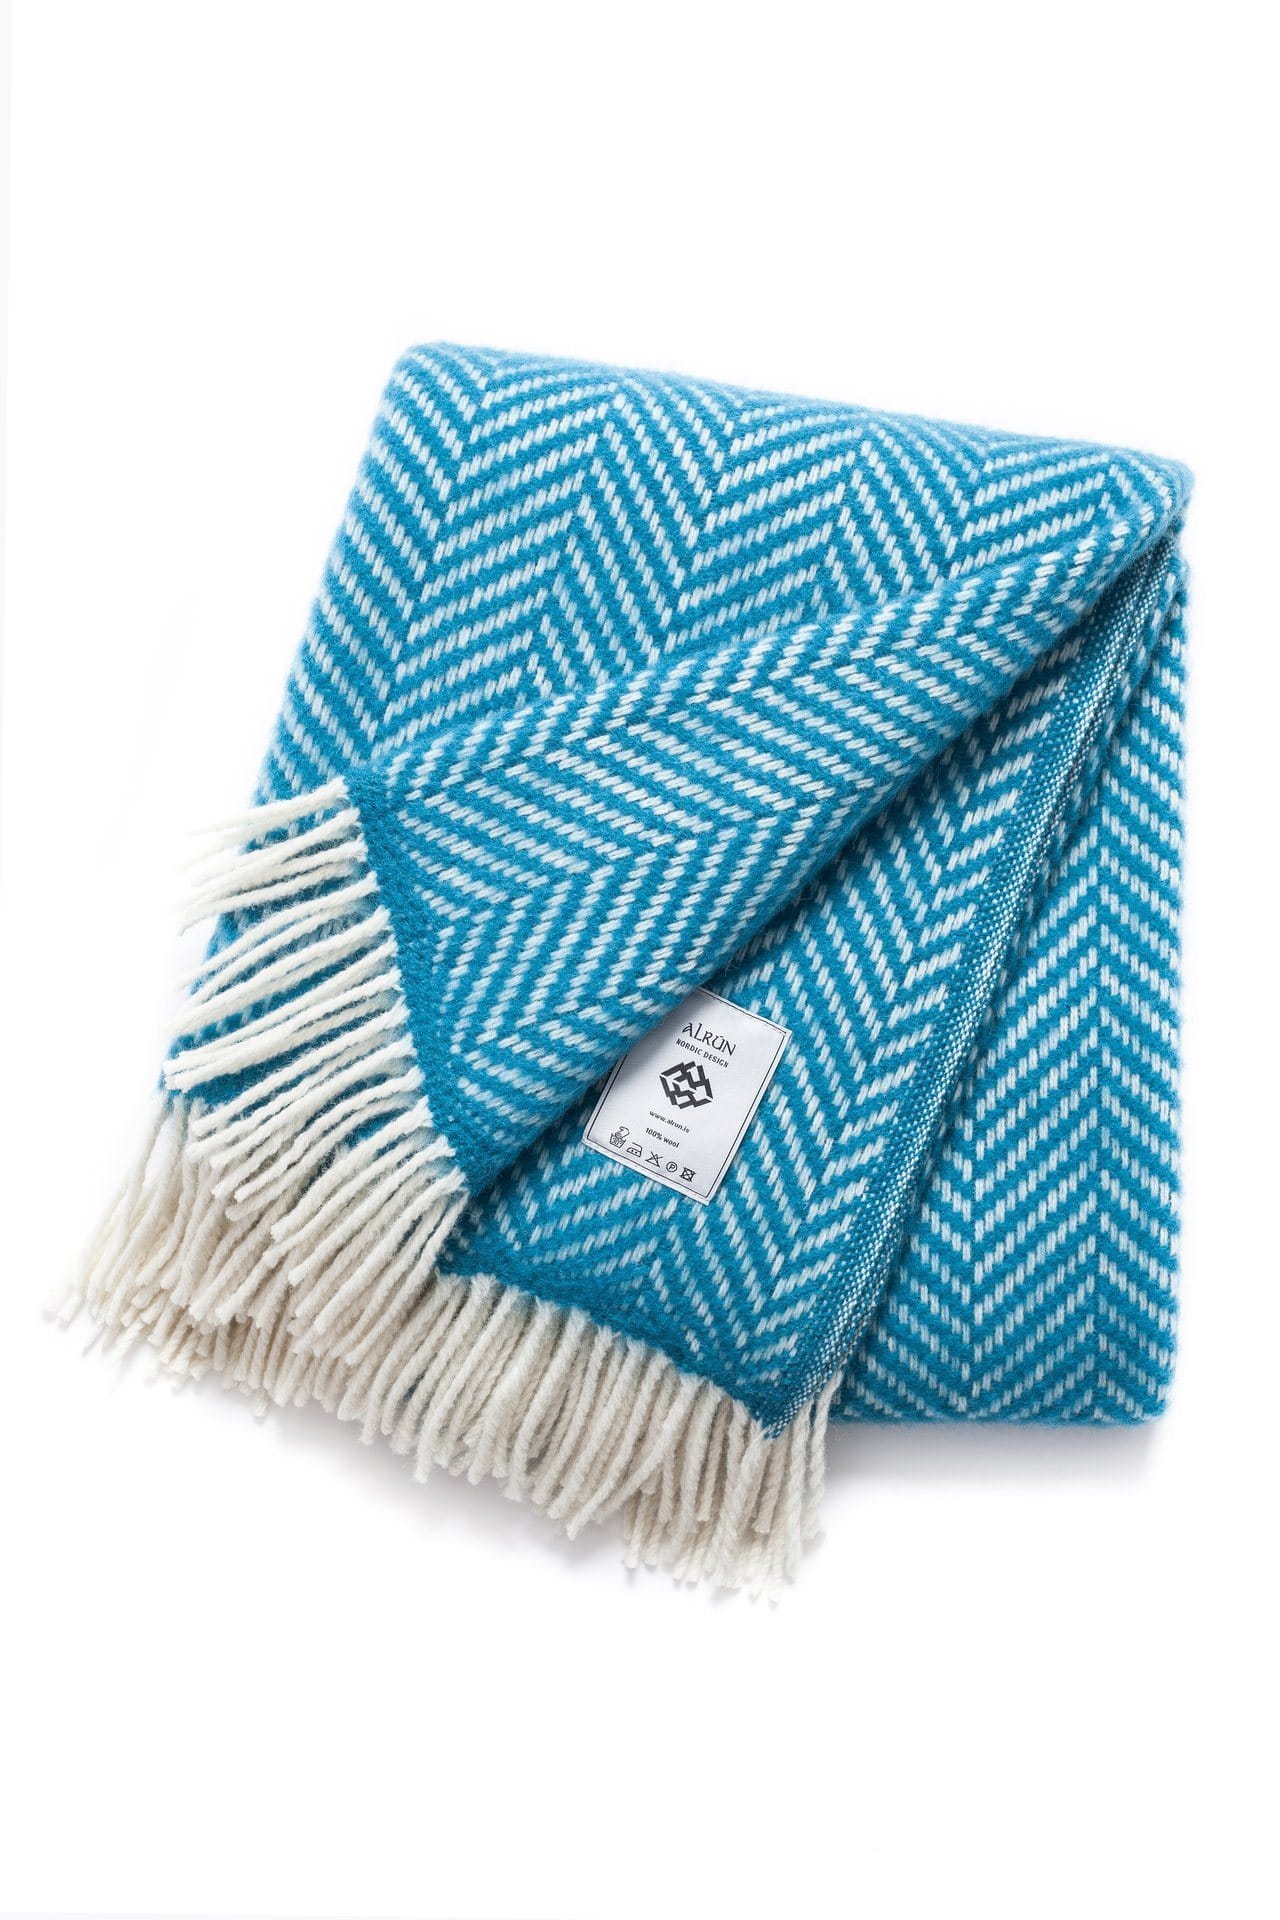 Nordic Herringbone blanket - Turquoise - icelandicstore.is